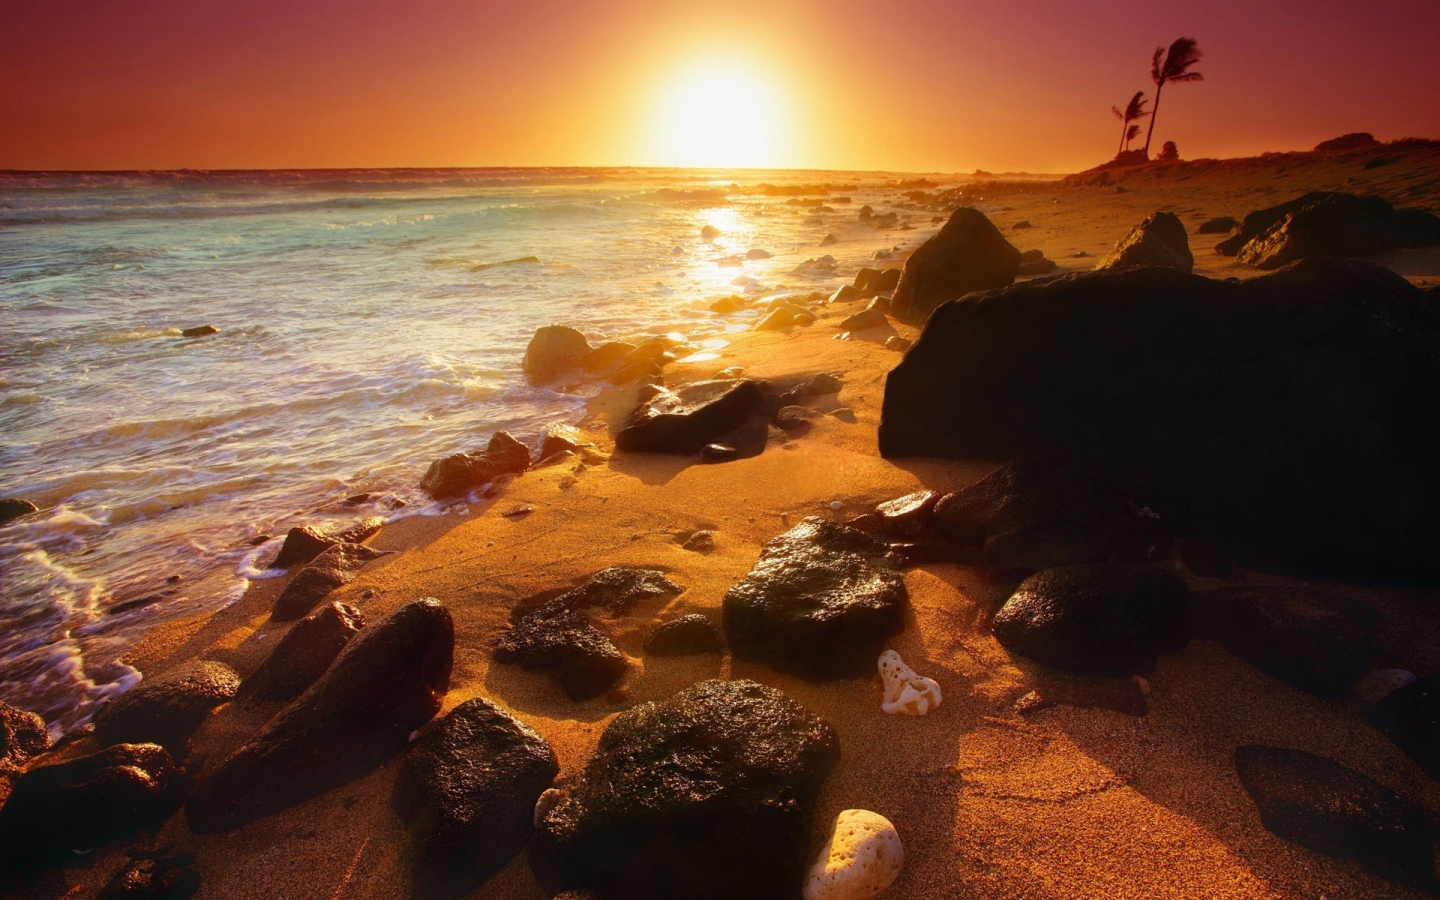 Summer beautiful sunset for 1440 x 900 widescreen resolution